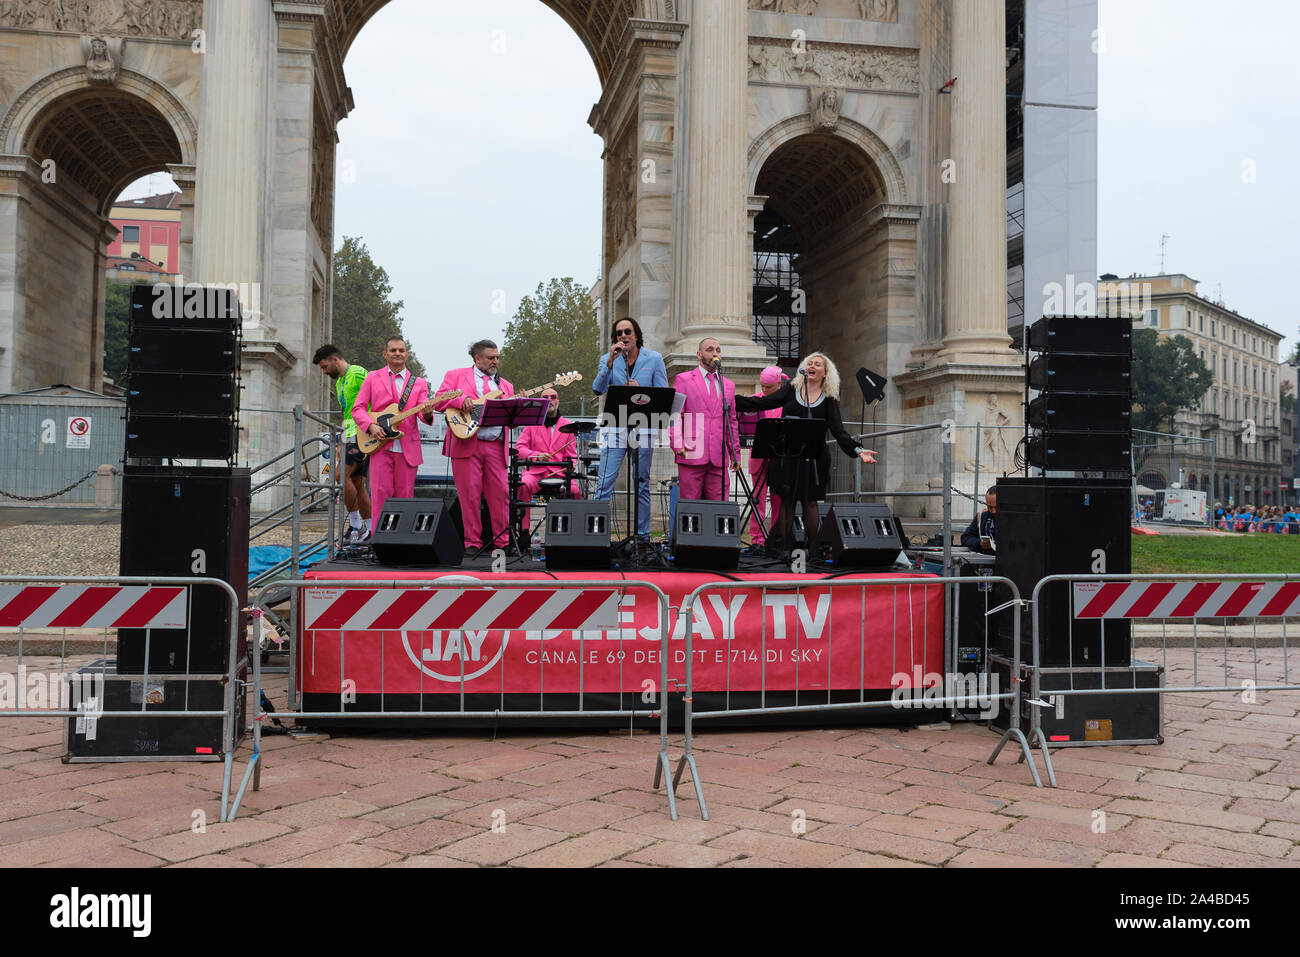 MILAN, ITALIE - 13 octobre 2019 : Le 'I Cormorani' musical groupe accueille les coureurs à l'arrivée pour fêter le deejay dix, un événement organisé en cours d'exécution Banque D'Images